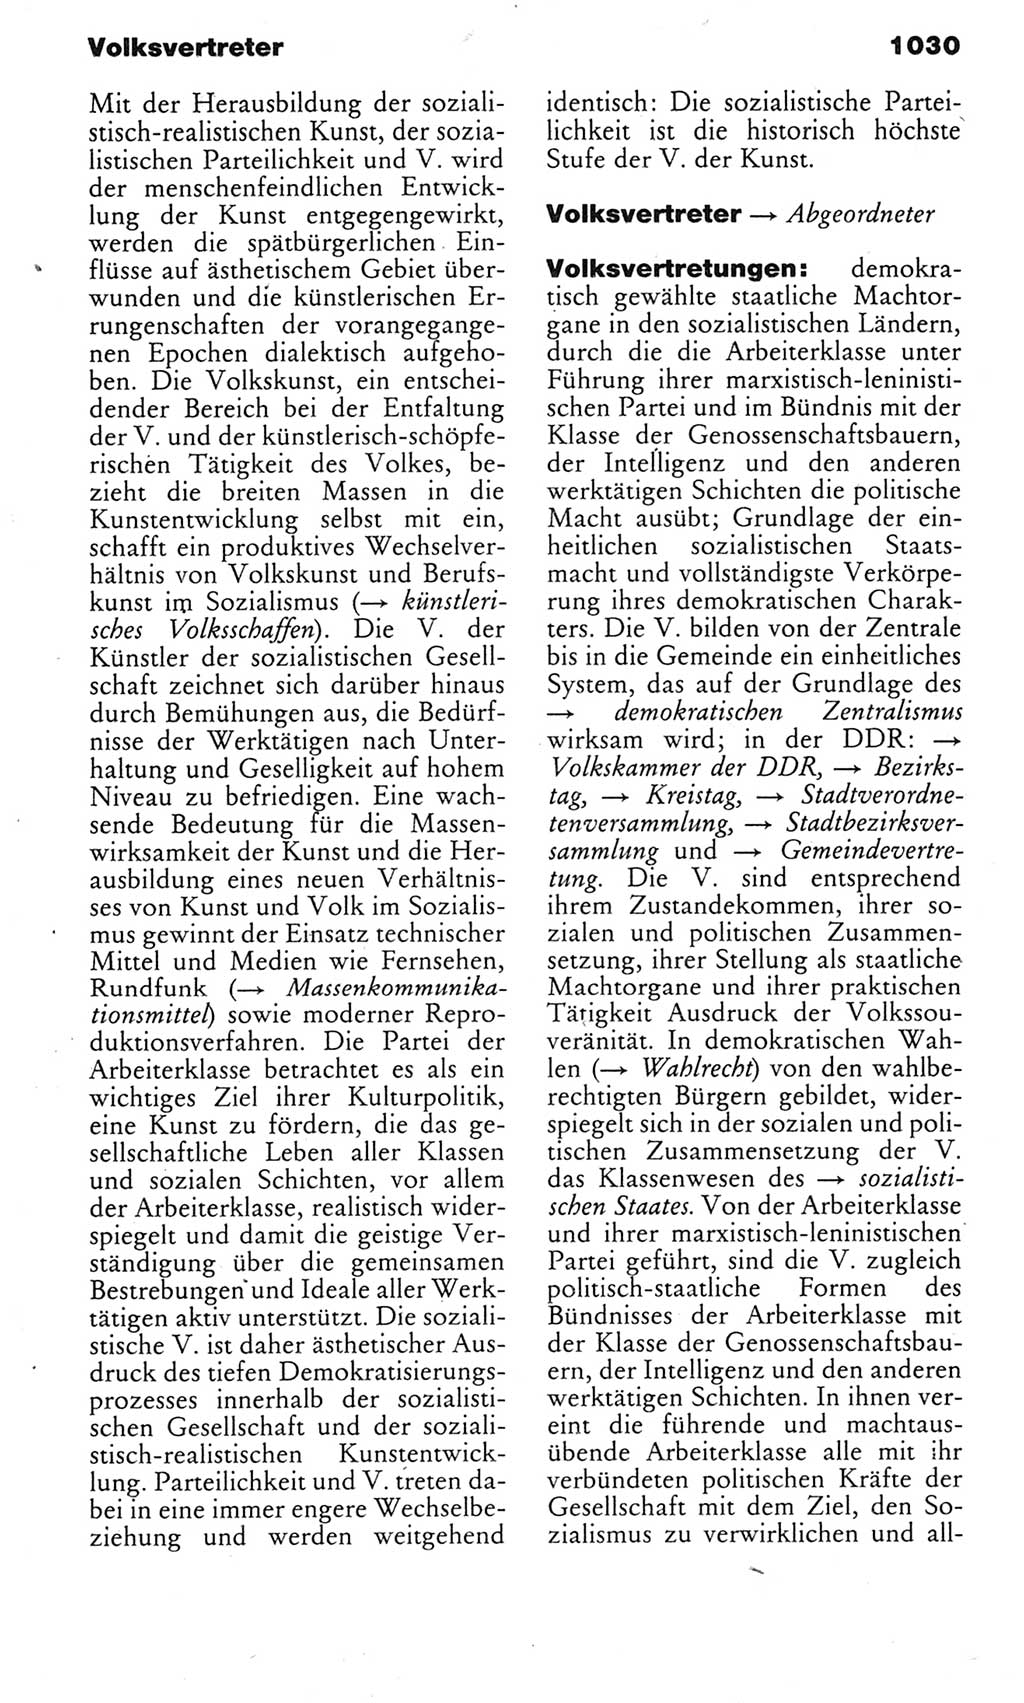 Kleines politisches Wörterbuch [Deutsche Demokratische Republik (DDR)] 1983, Seite 1030 (Kl. pol. Wb. DDR 1983, S. 1030)